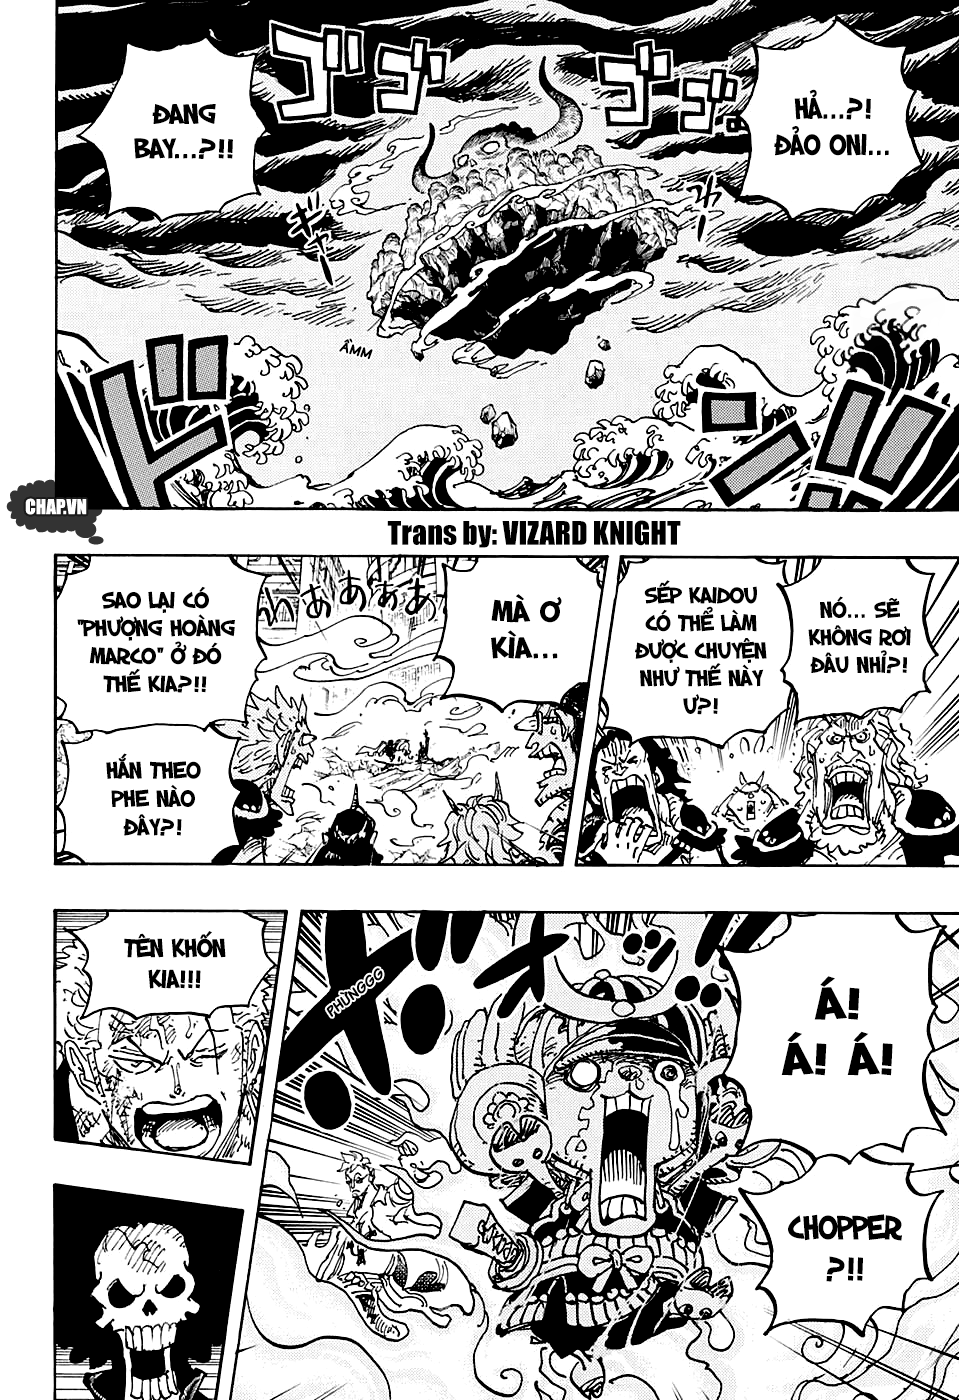 One Piece Chapter 998 đã xuất hiện với nhiều tình tiết hấp dẫn và bí ẩn thú vị, điều này chắc chắn sẽ khiến các fan của bộ manga này không thể bỏ qua. Hãy cùng đón xem chapter mới nhất này và trải nghiệm cảm giác đánh thức sự tò mò và hào hứng của mình.